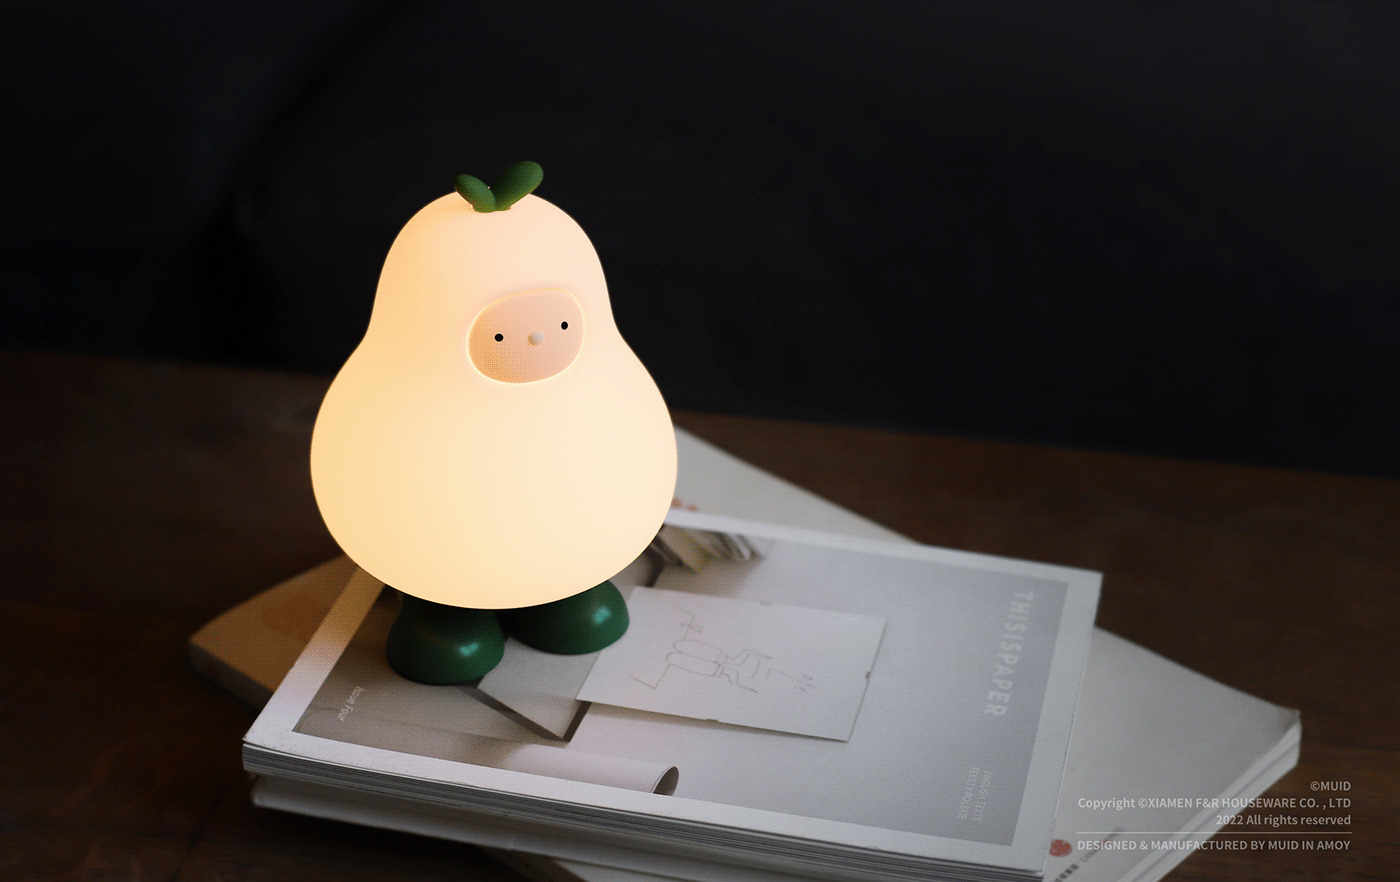 design Muid night lamp product design 